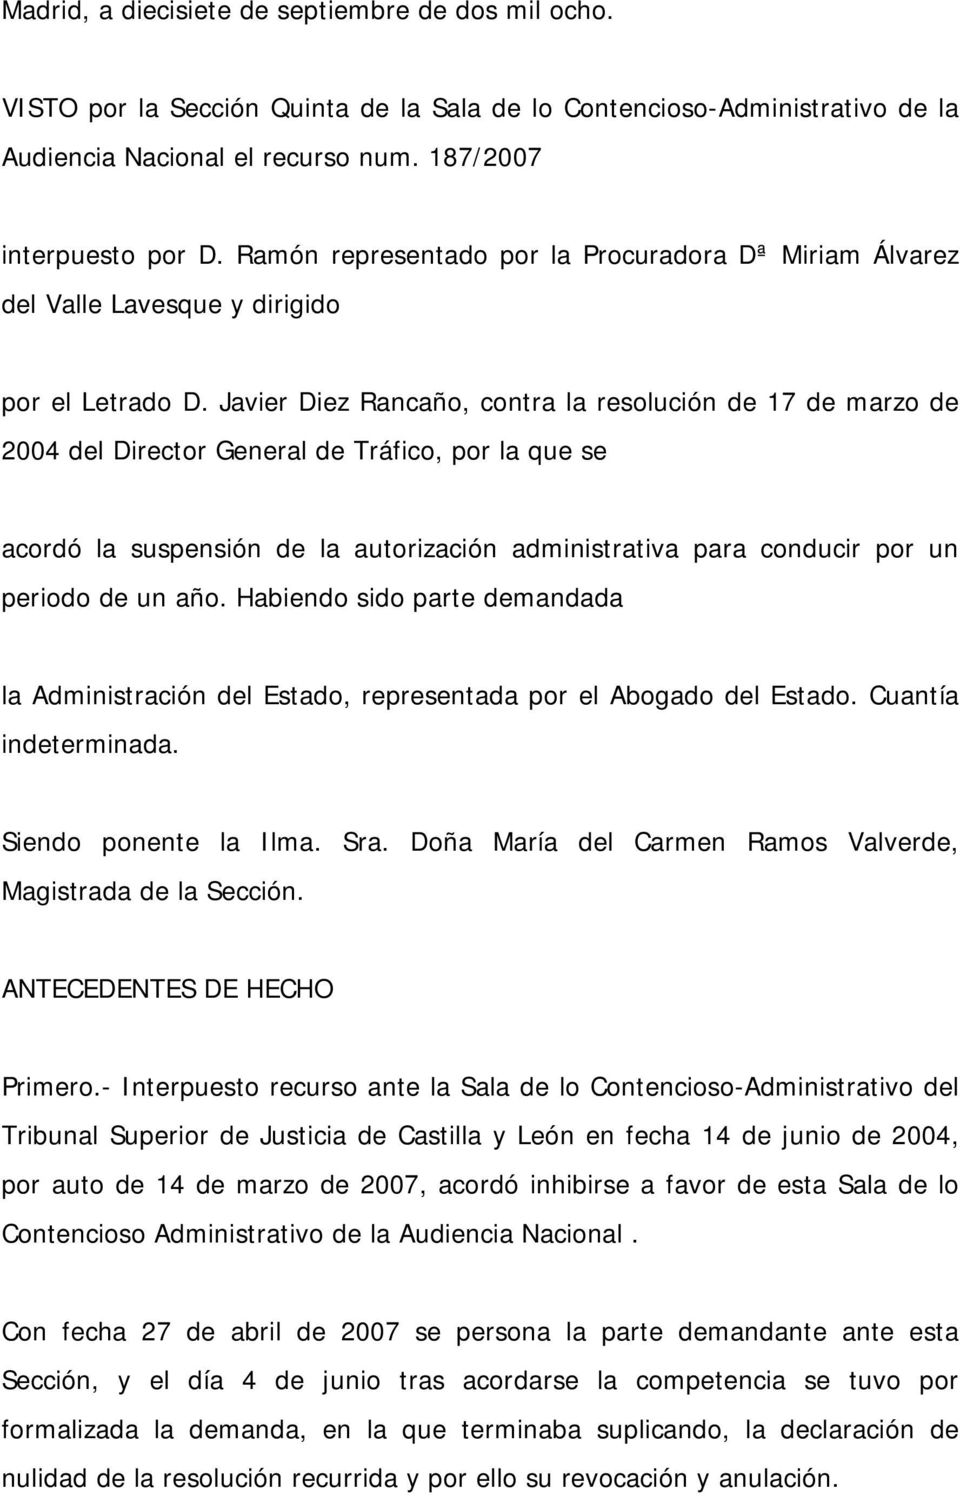 Javier Diez Rancaño, contra la resolución de 17 de marzo de 2004 del Director General de Tráfico, por la que se acordó la suspensión de la autorización administrativa para conducir por un periodo de